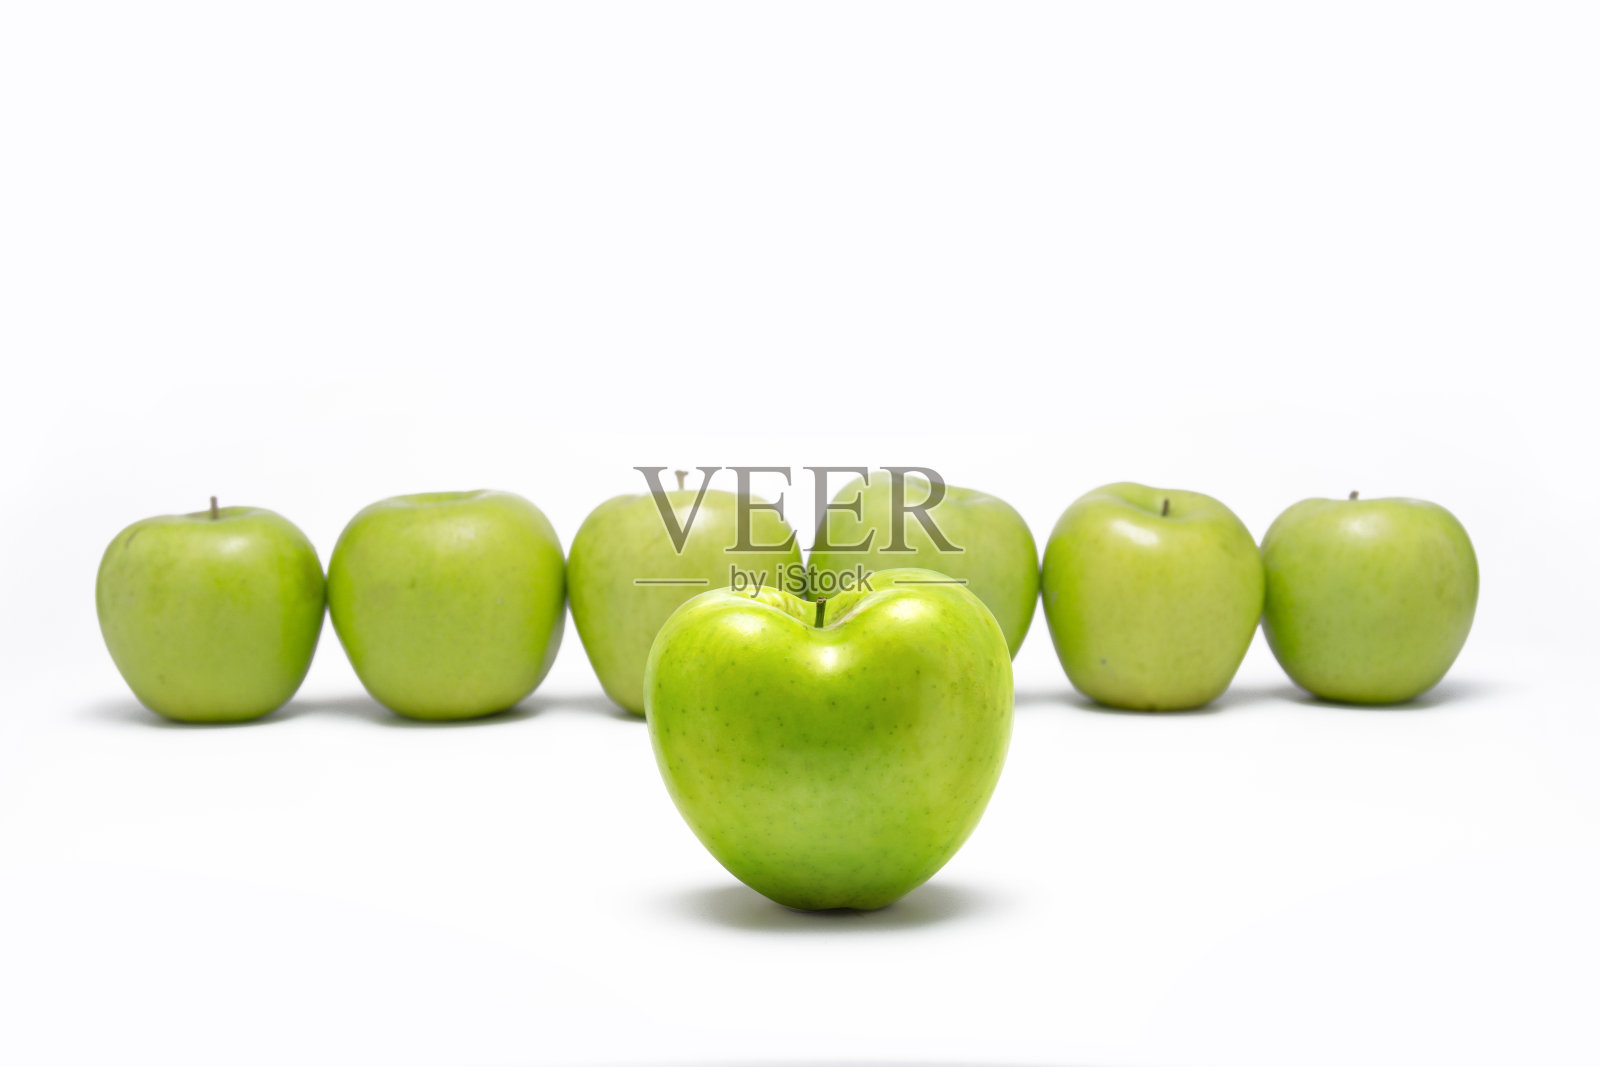 心形的青苹果在其他青苹果前面排成一列。照片摄影图片